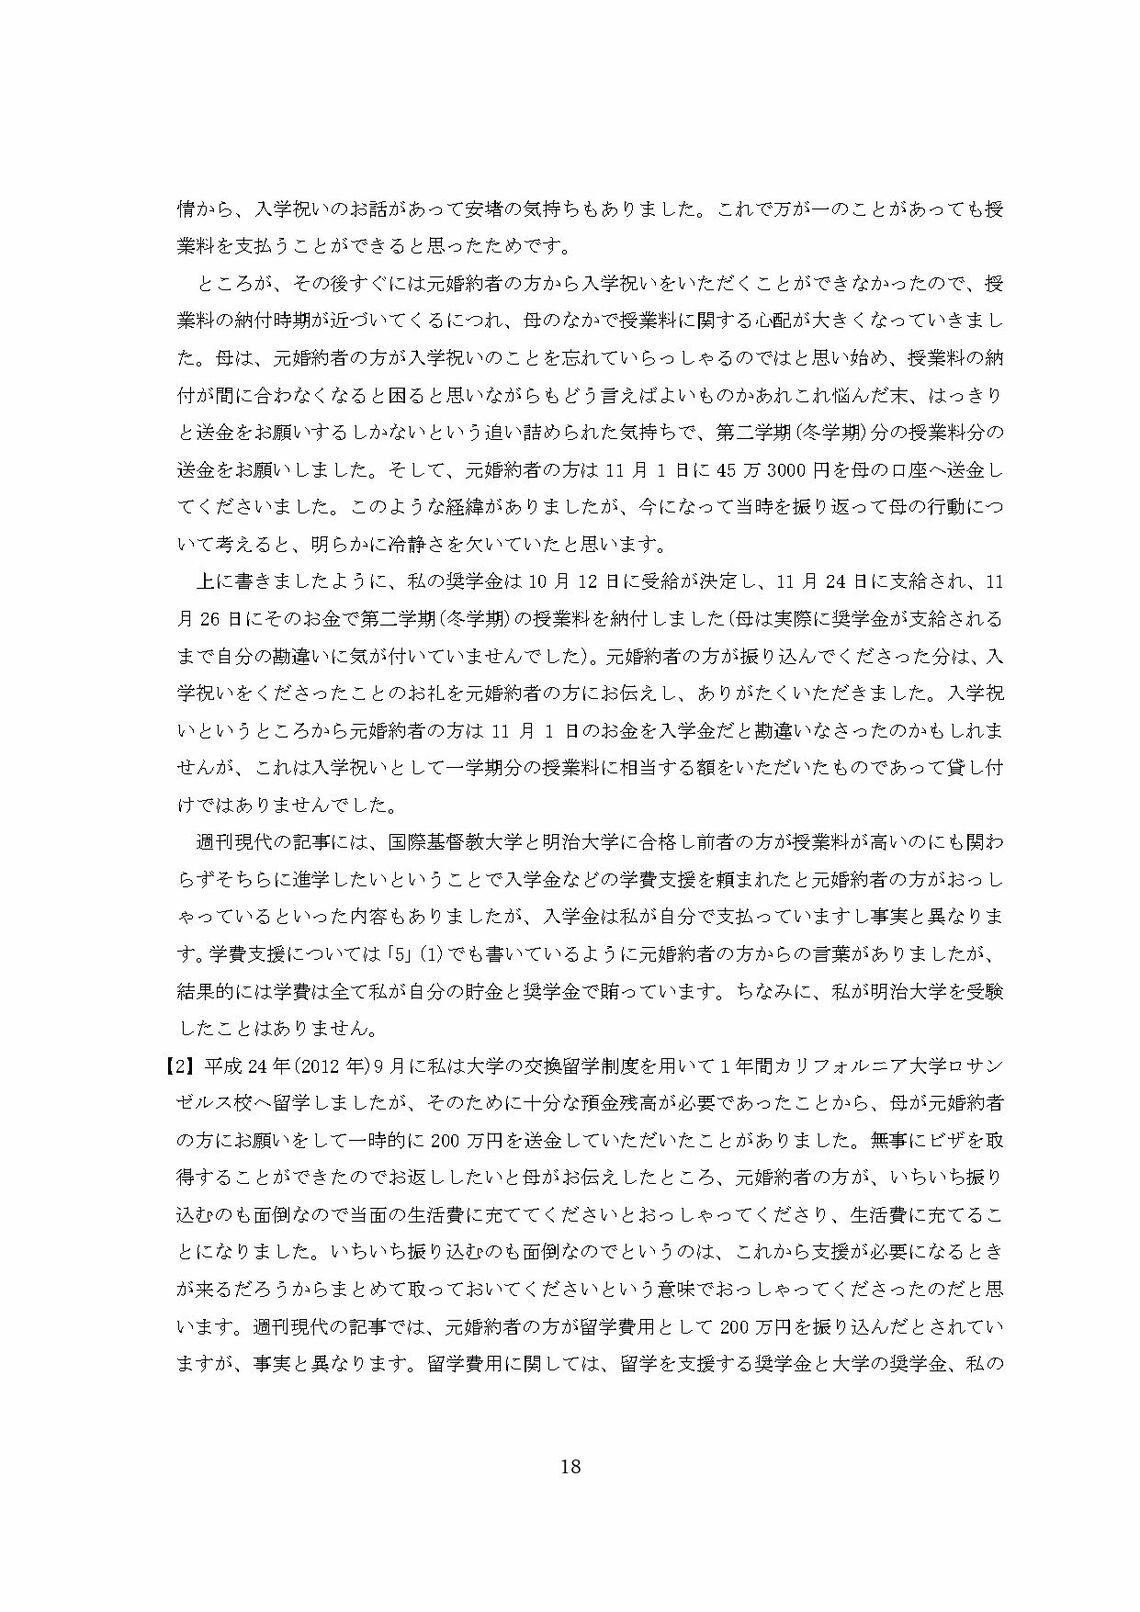 小室圭氏の代理人より届いた文書本文の脚注（18ページ目）（写真：週刊女性PRIME）